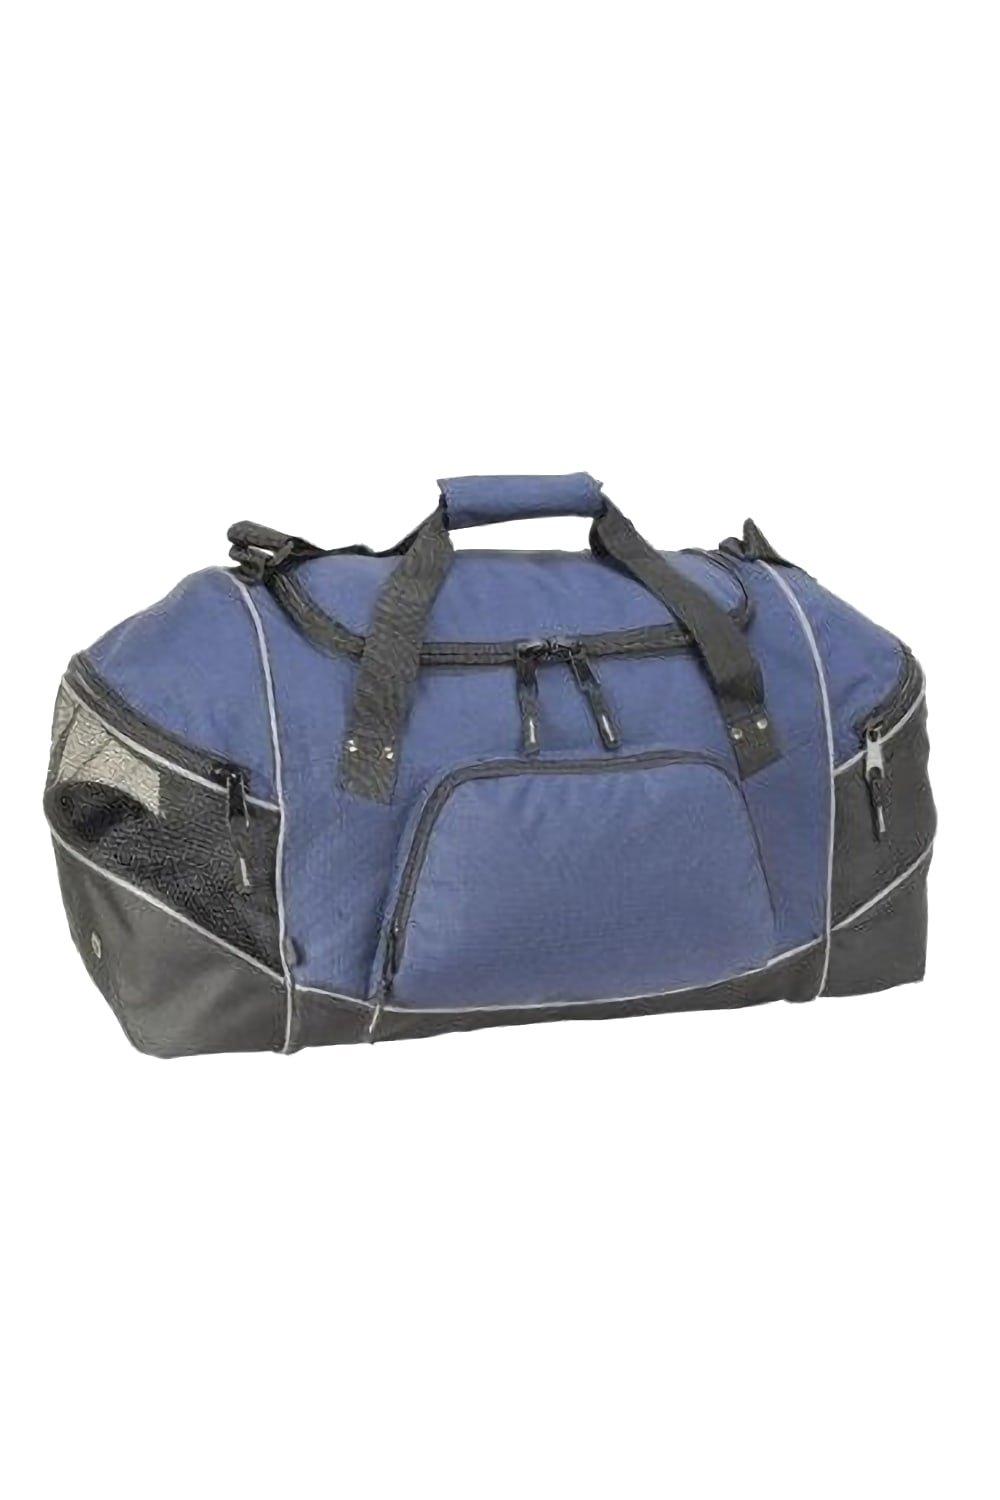 Универсальная дорожная сумка Daytona (50 литров) Shugon, темно-синий ручка газа в сборе универсальная daytona